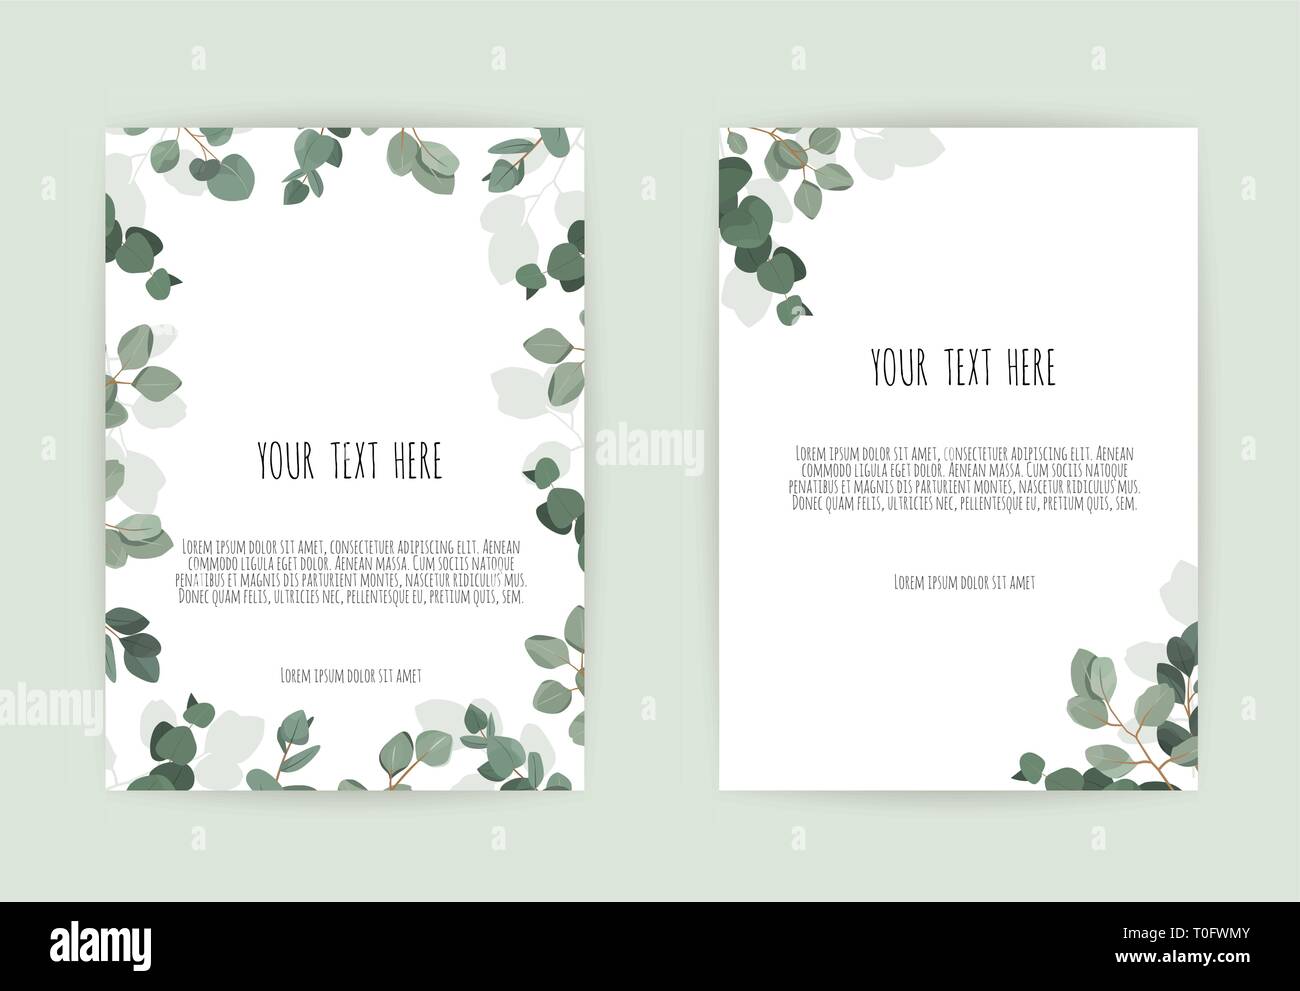 Modèle de carte d'invitation de mariage botanique design, fleurs blanches et roses sur fond blanc. Illustration de Vecteur